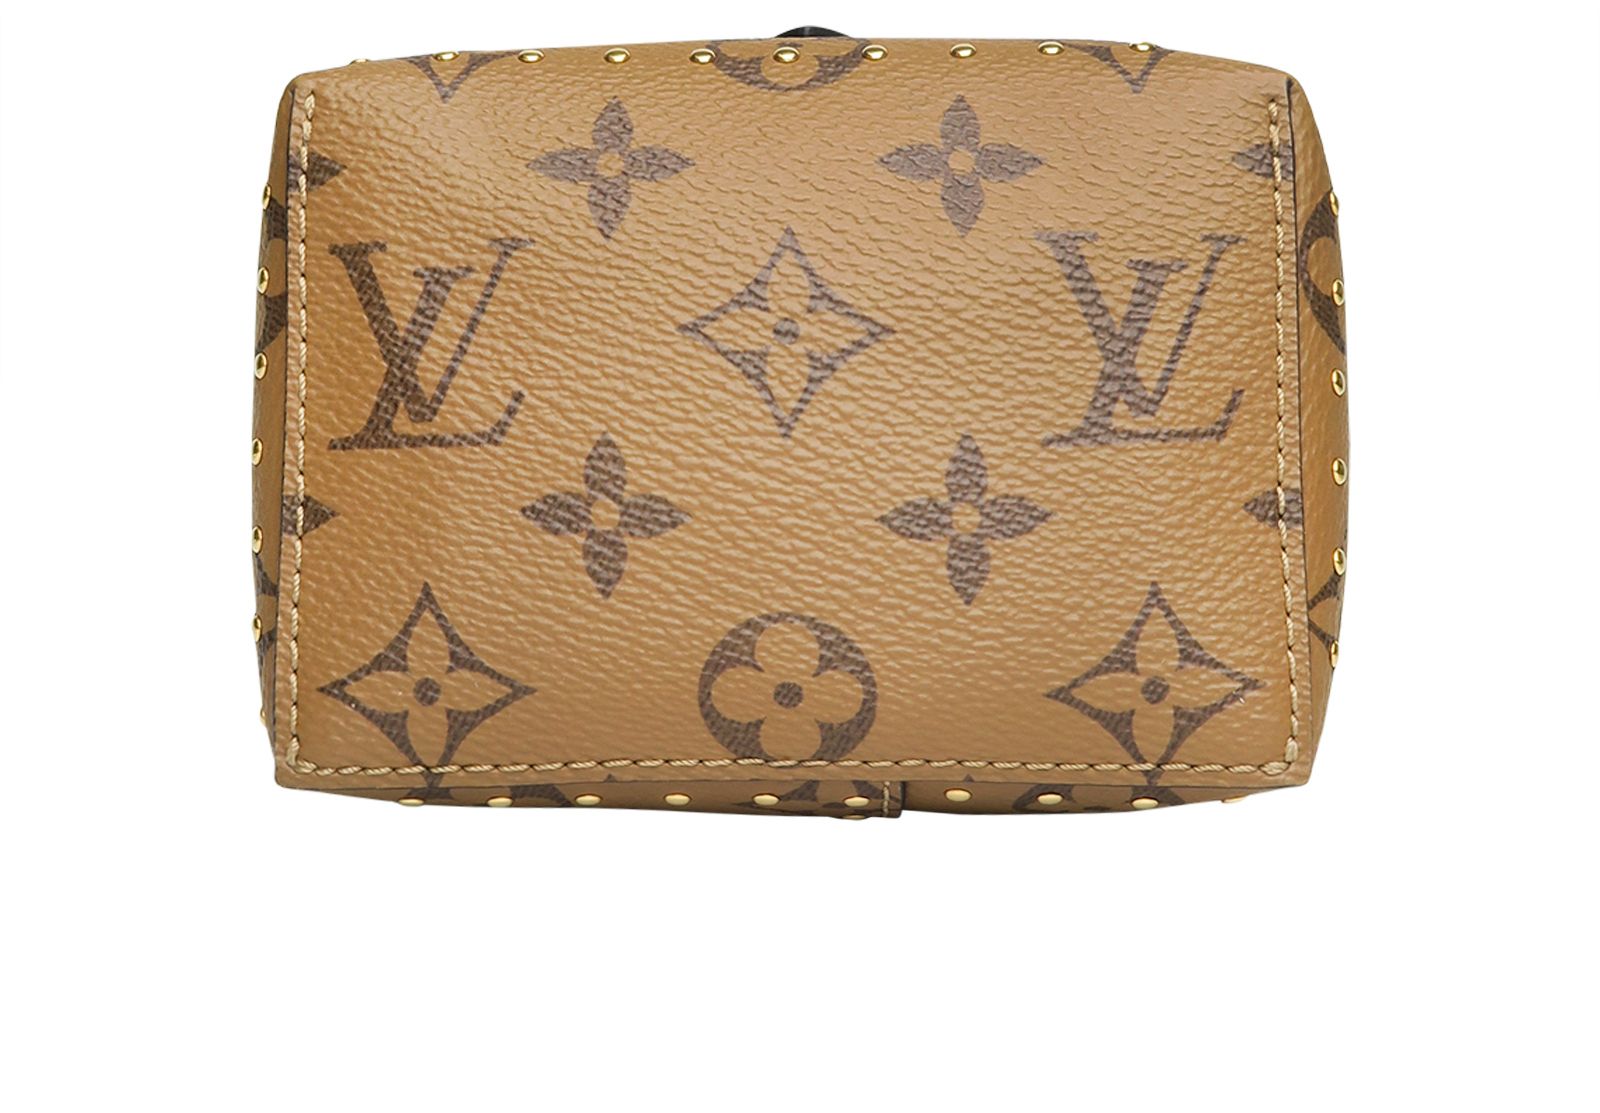 Louis Vuitton Reversed Monogram Camera Box Bag, Bragmybag